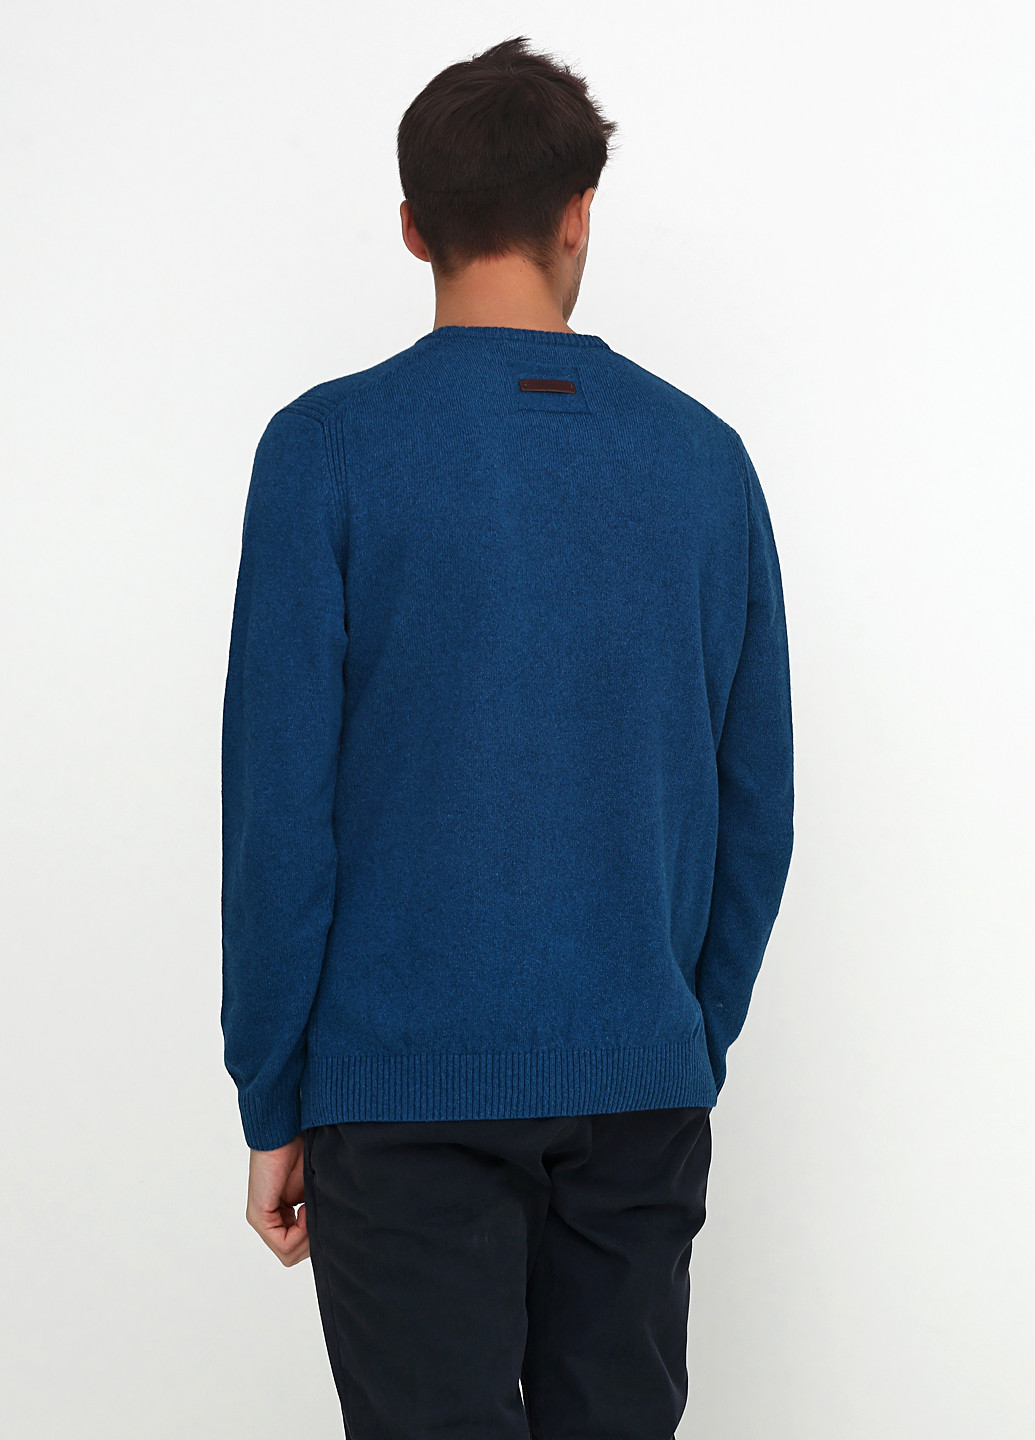 Темно-синий демисезонный пуловер пуловер Camel Active